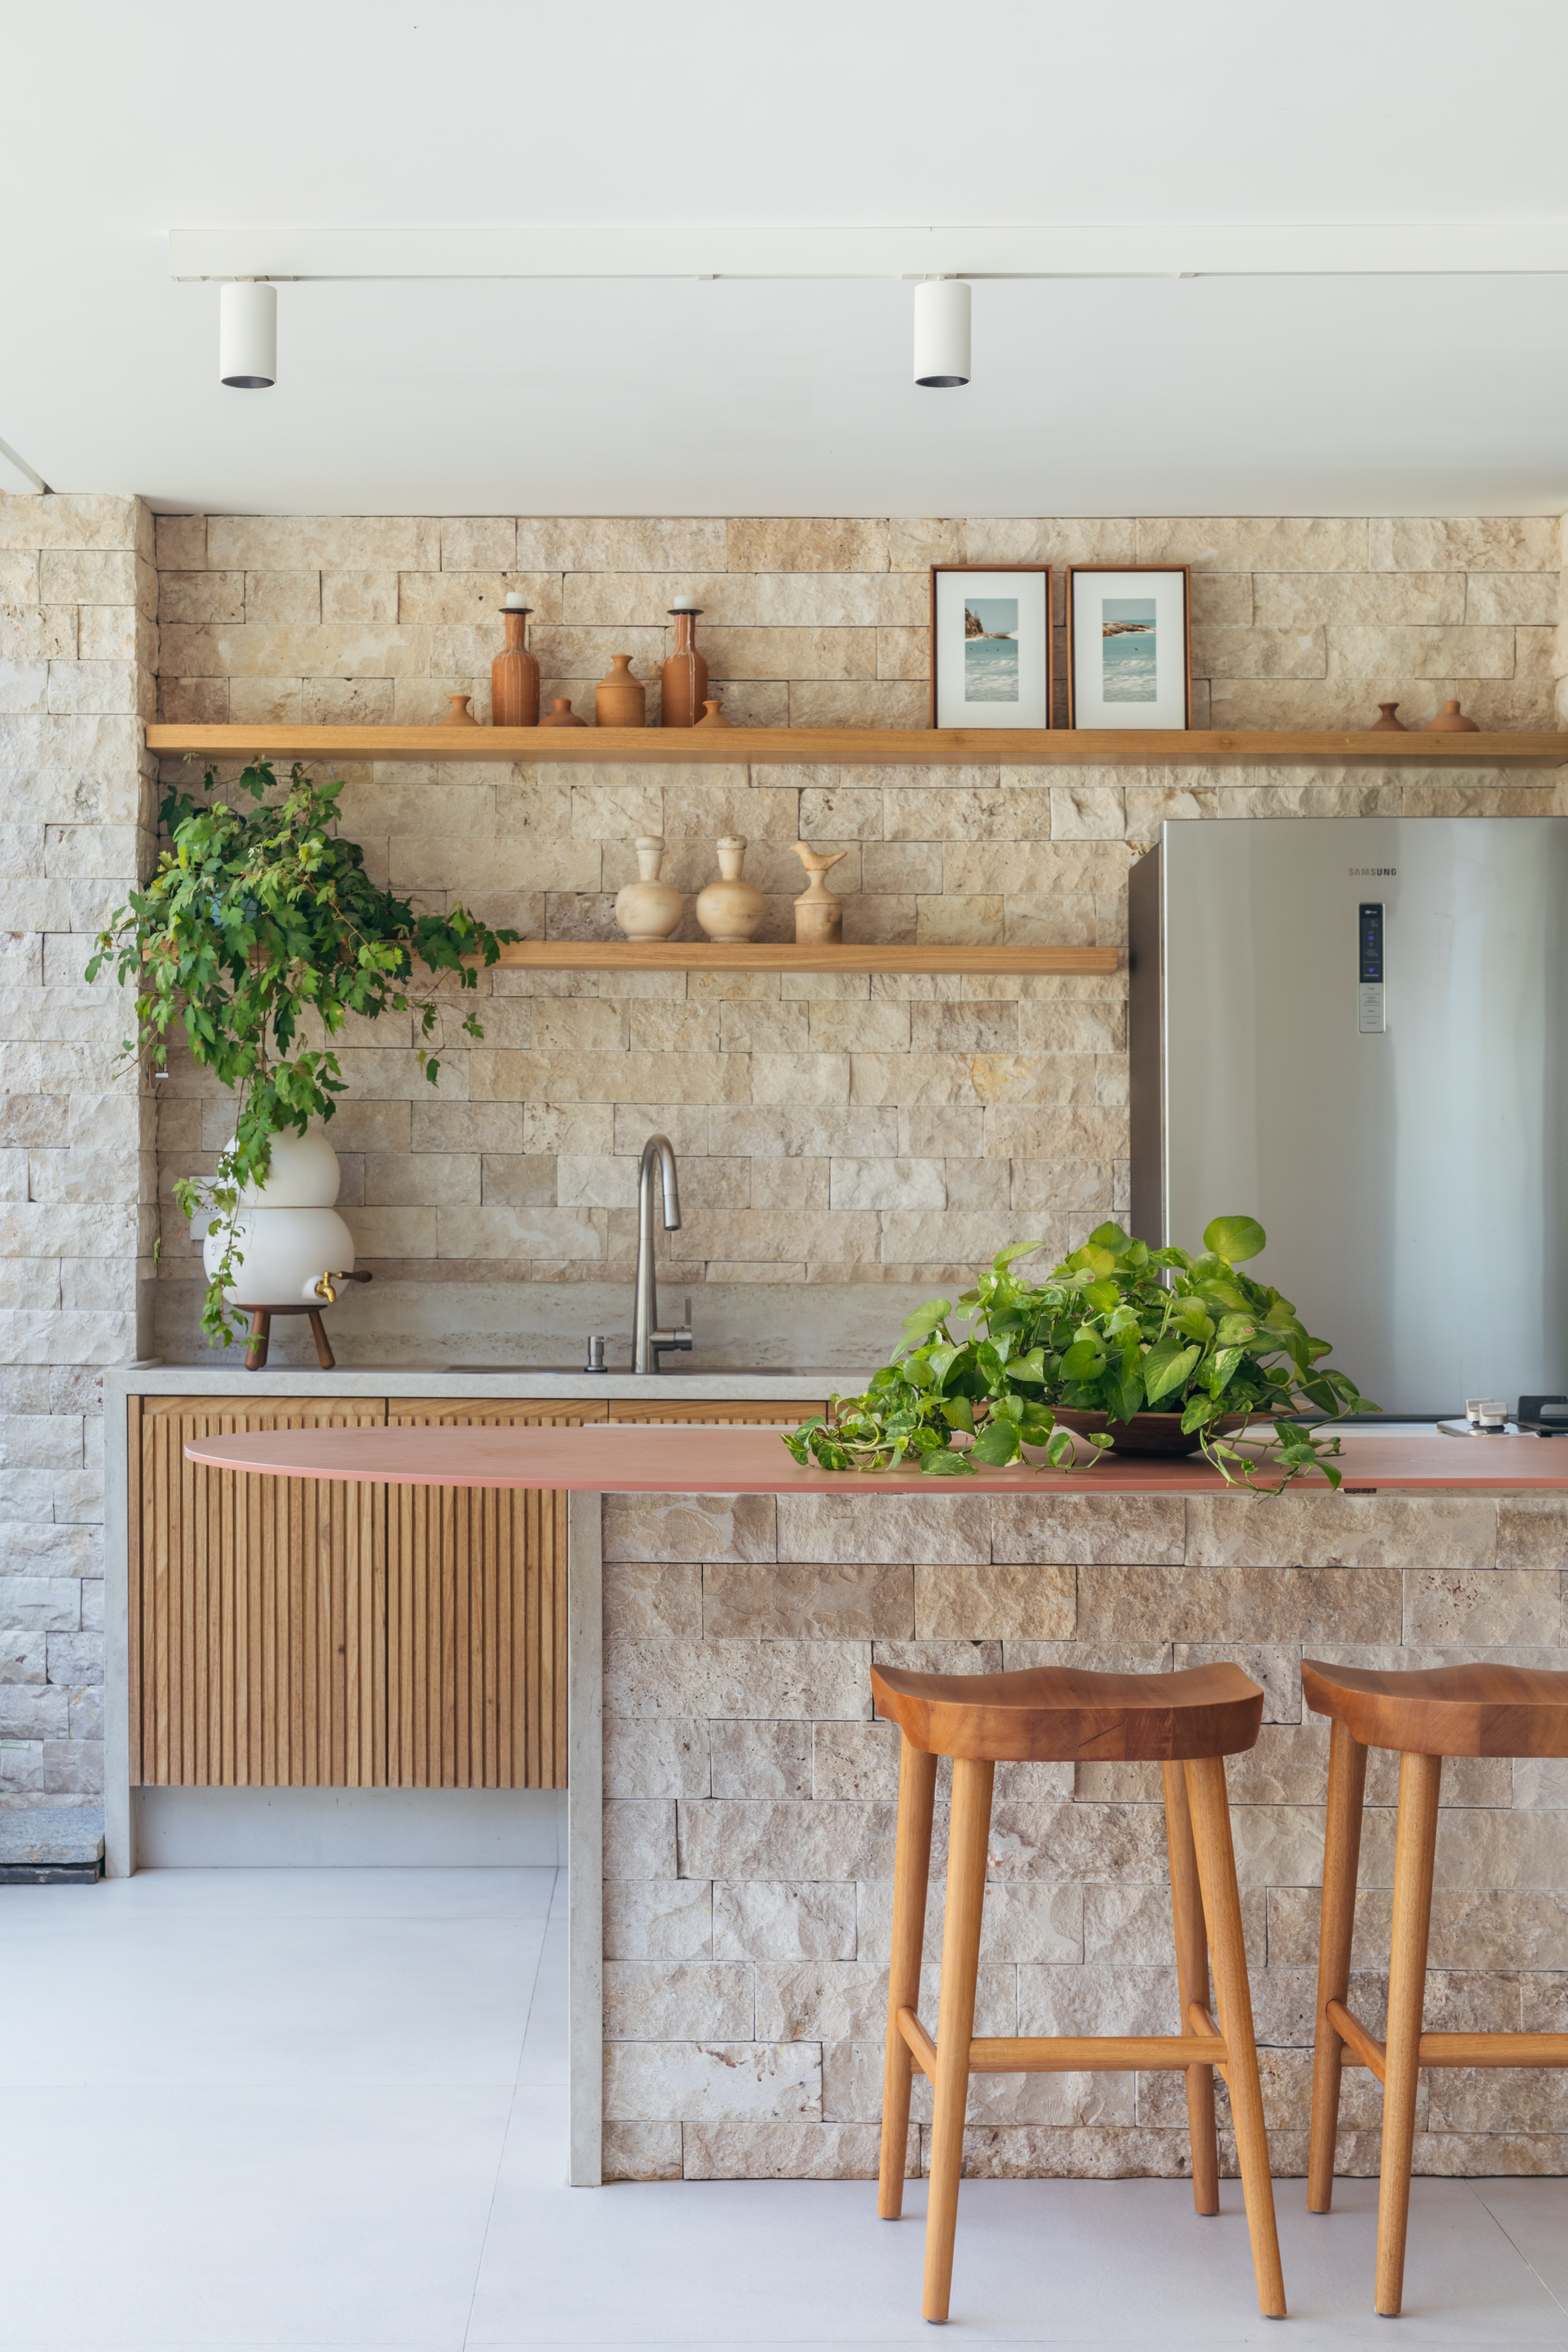 Pergolados com forro em fibras de bambu trançadas envolvem casa de 195 m². Projeto de Amanda Miranda. Na foto, área gourmet, parede de pedra, plantas.